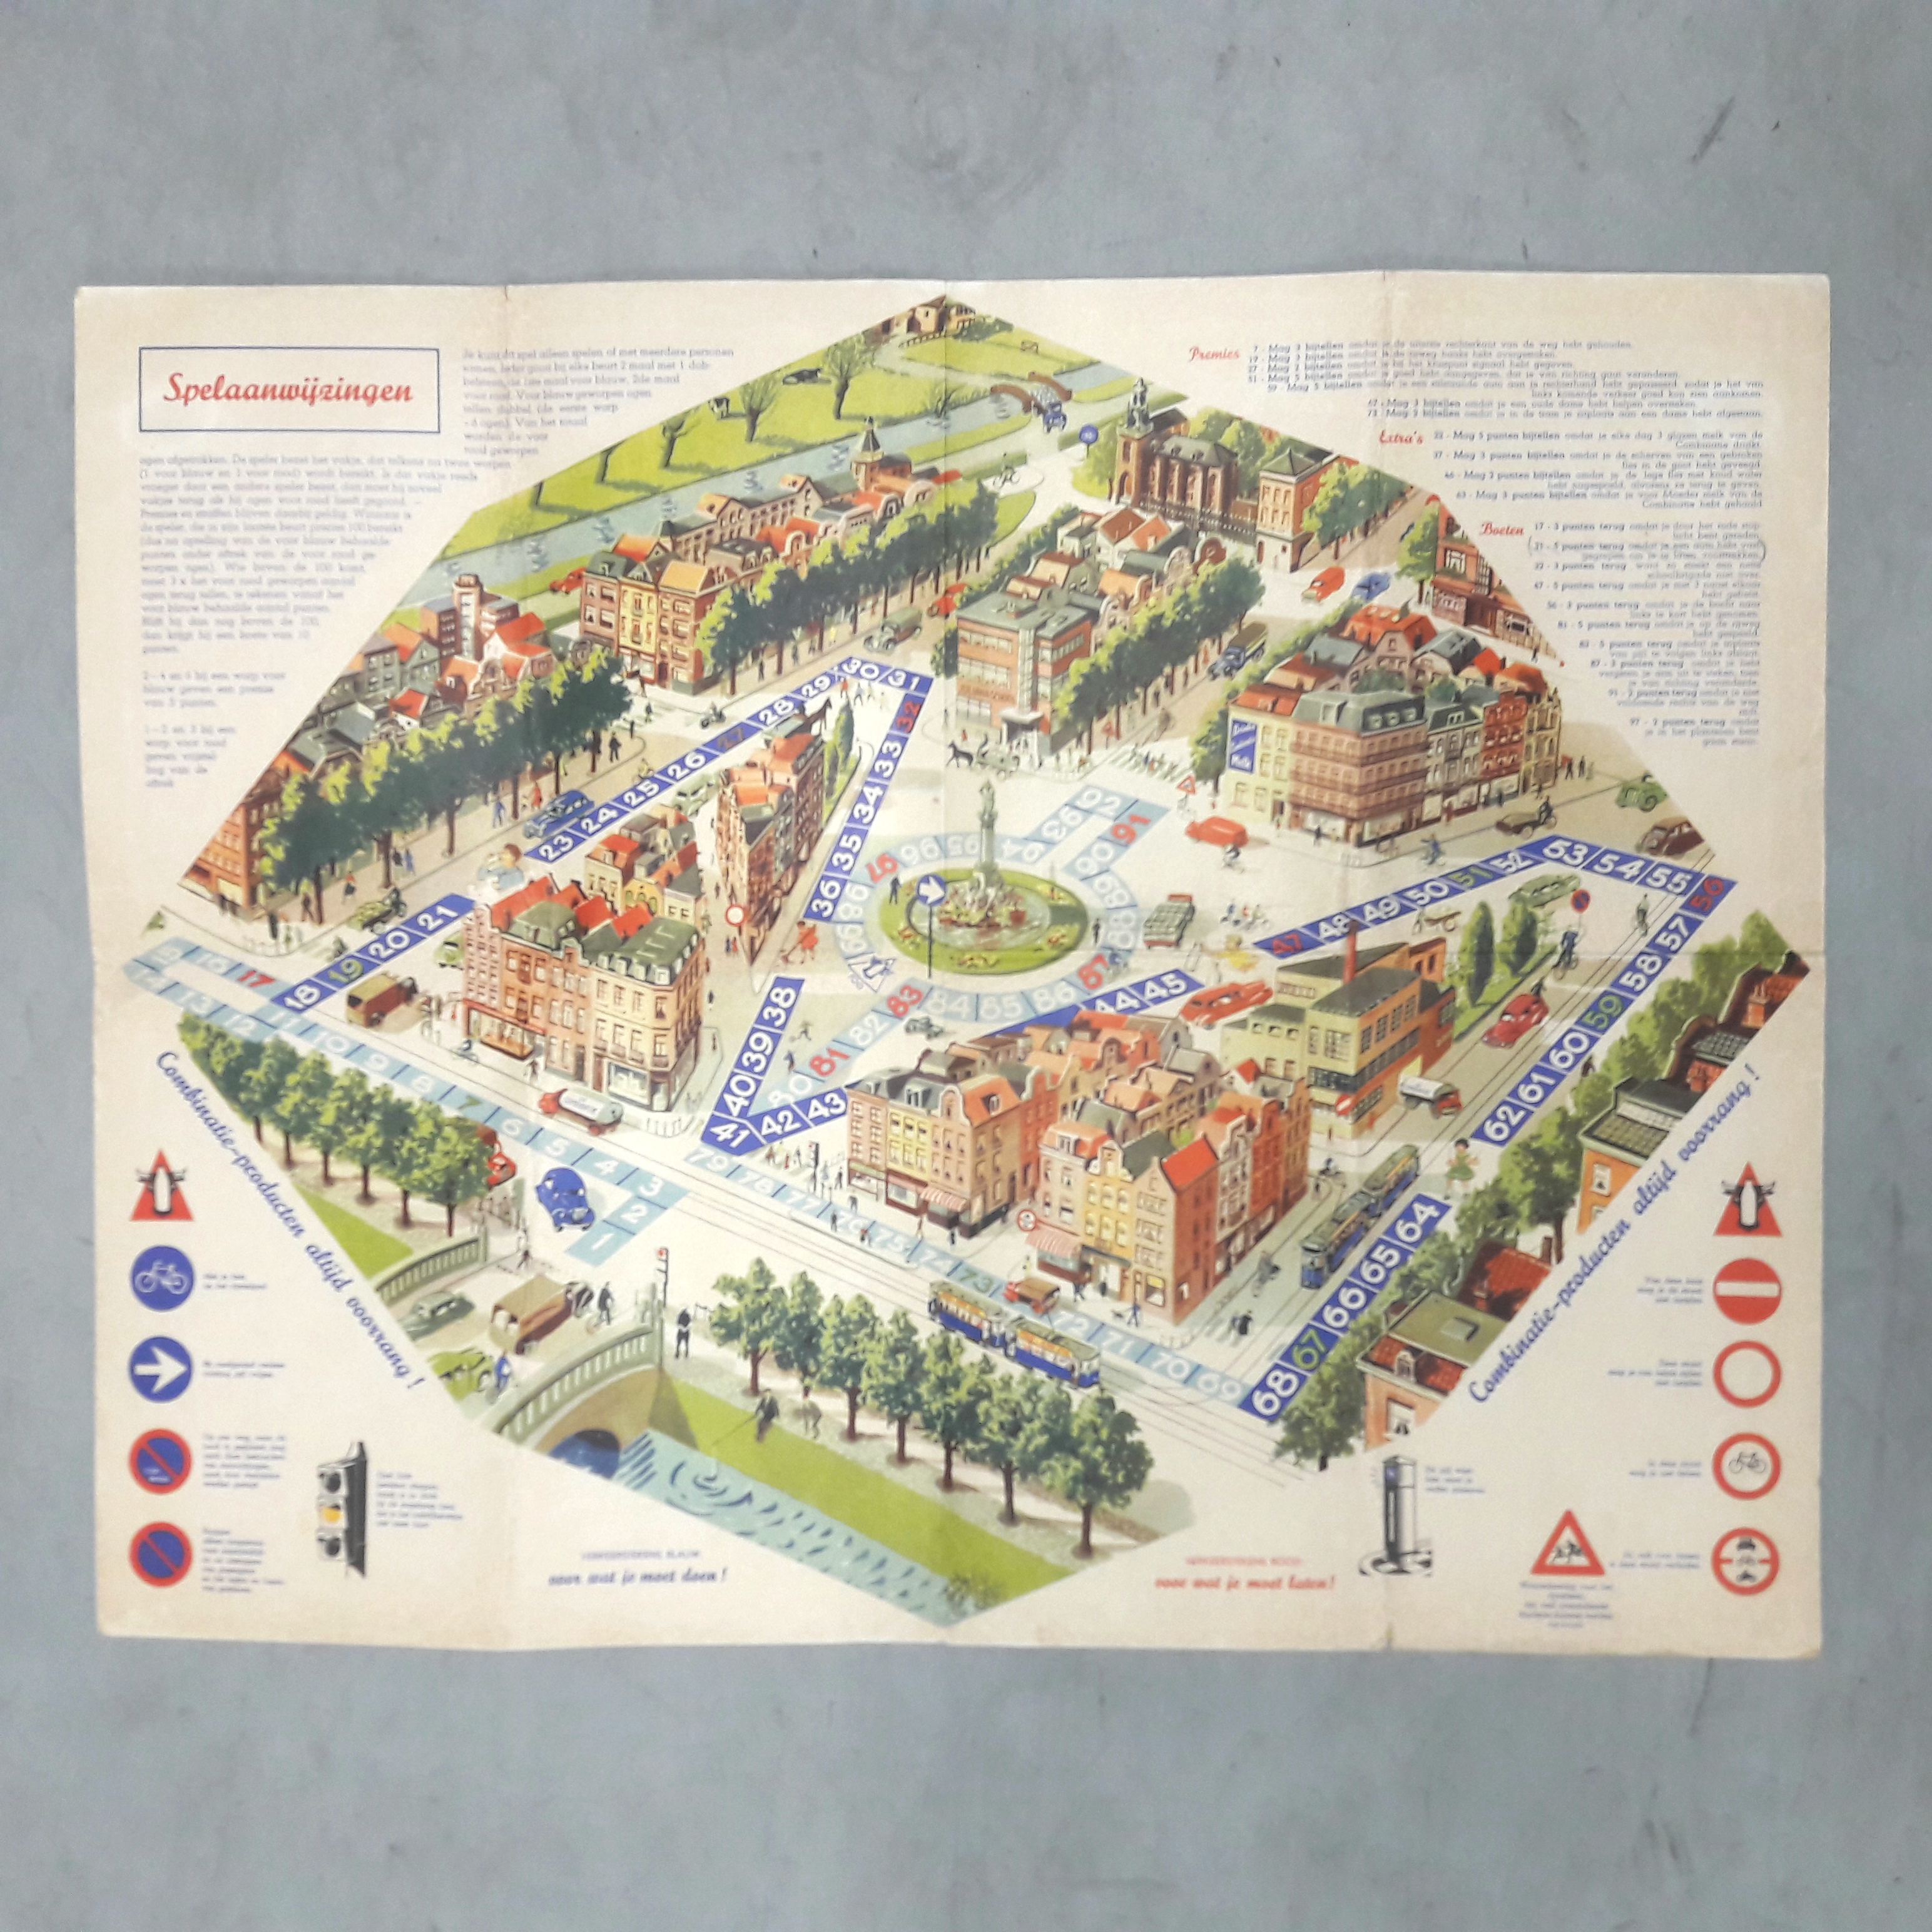 verkeersspel Combinatie Rotterdam 1953